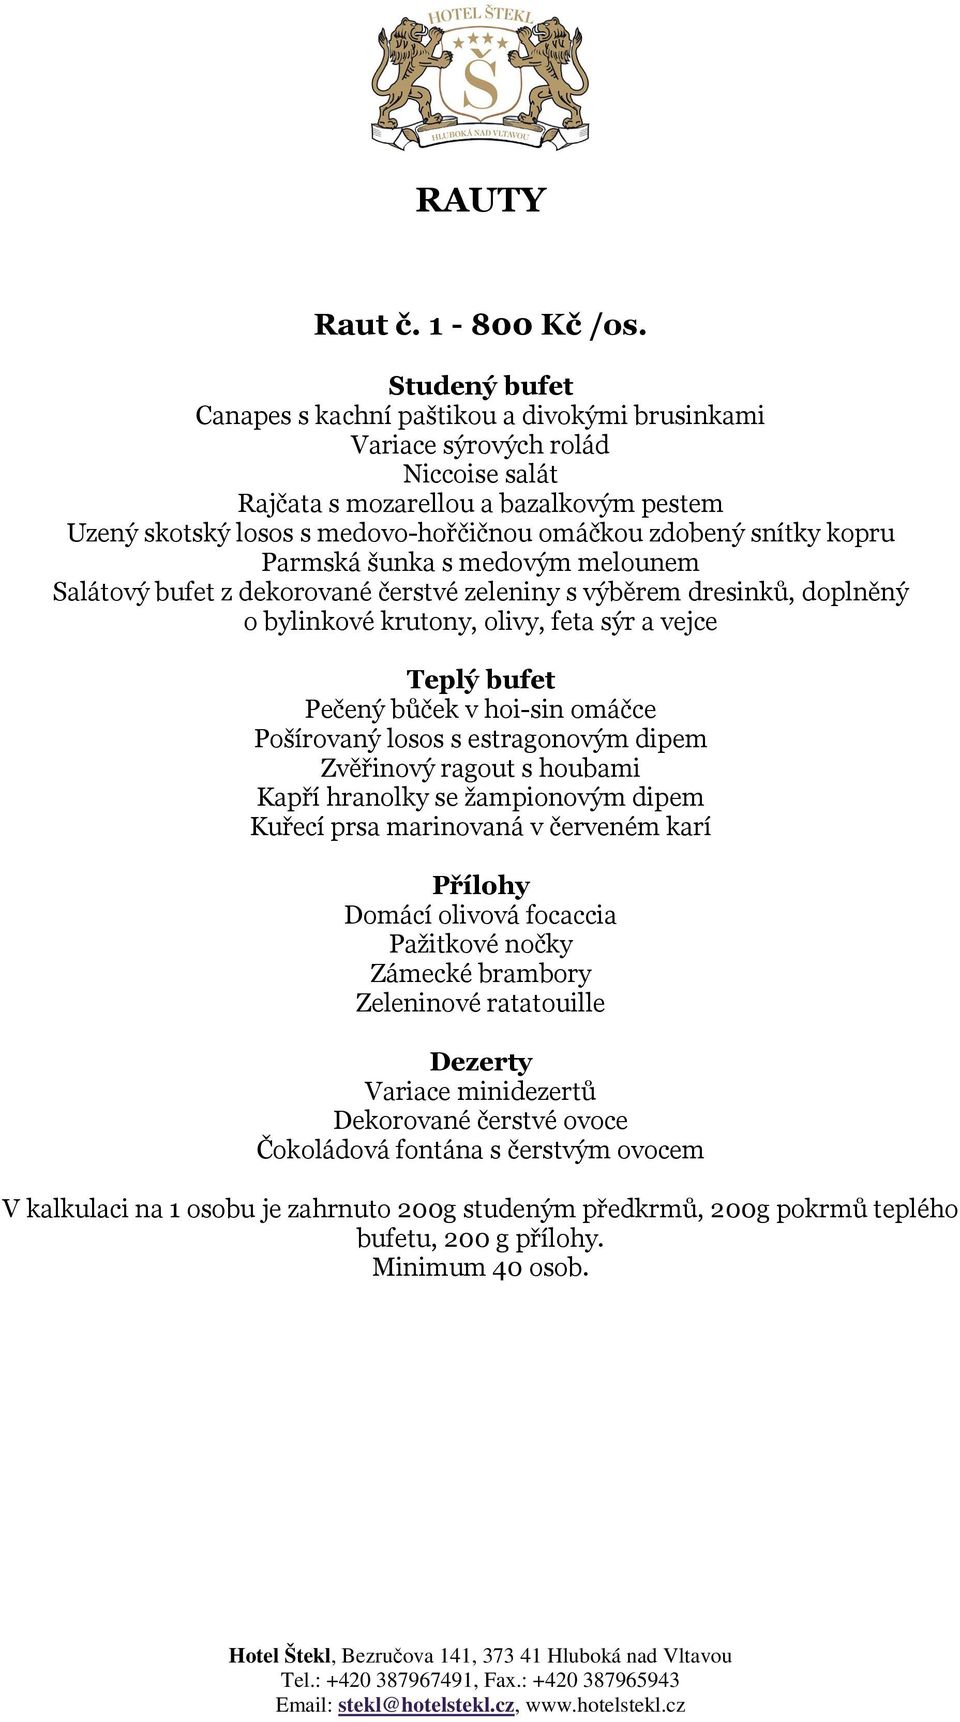 zdobený snítky kopru Parmská šunka s medovým melounem Salátový bufet z dekorované čerstvé zeleniny s výběrem dresinků, doplněný o bylinkové krutony, olivy, feta sýr a vejce